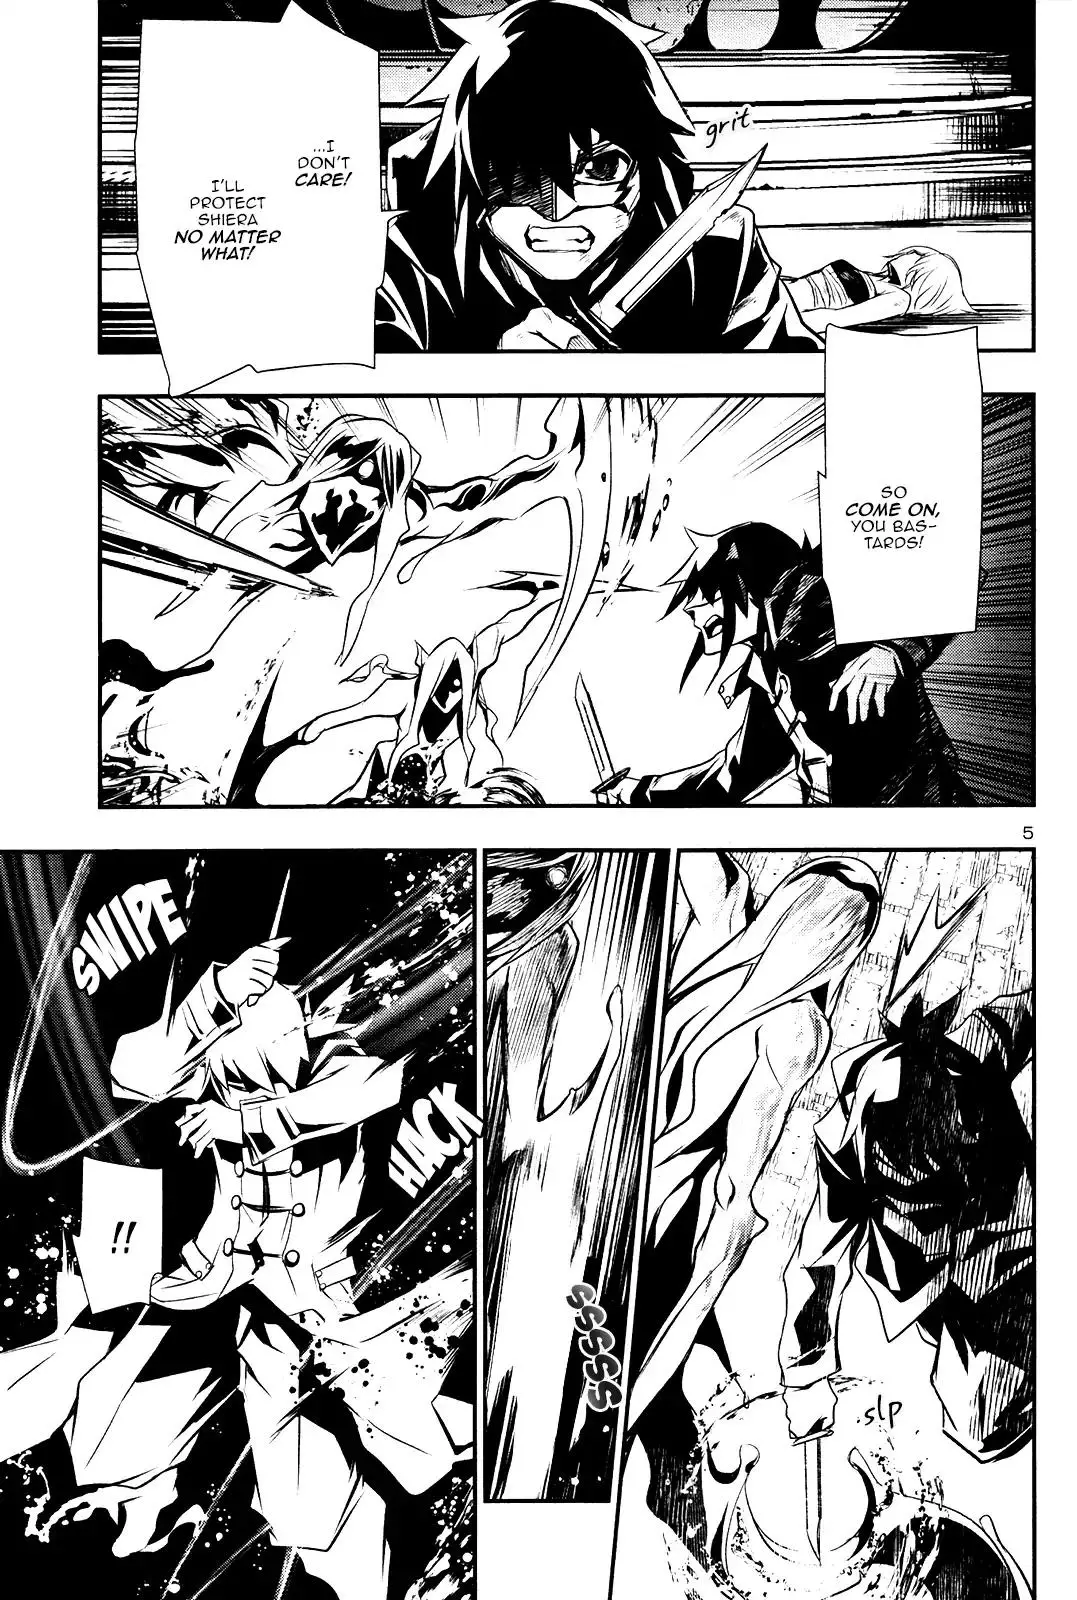 Shinju no Nectar - 19 page 4